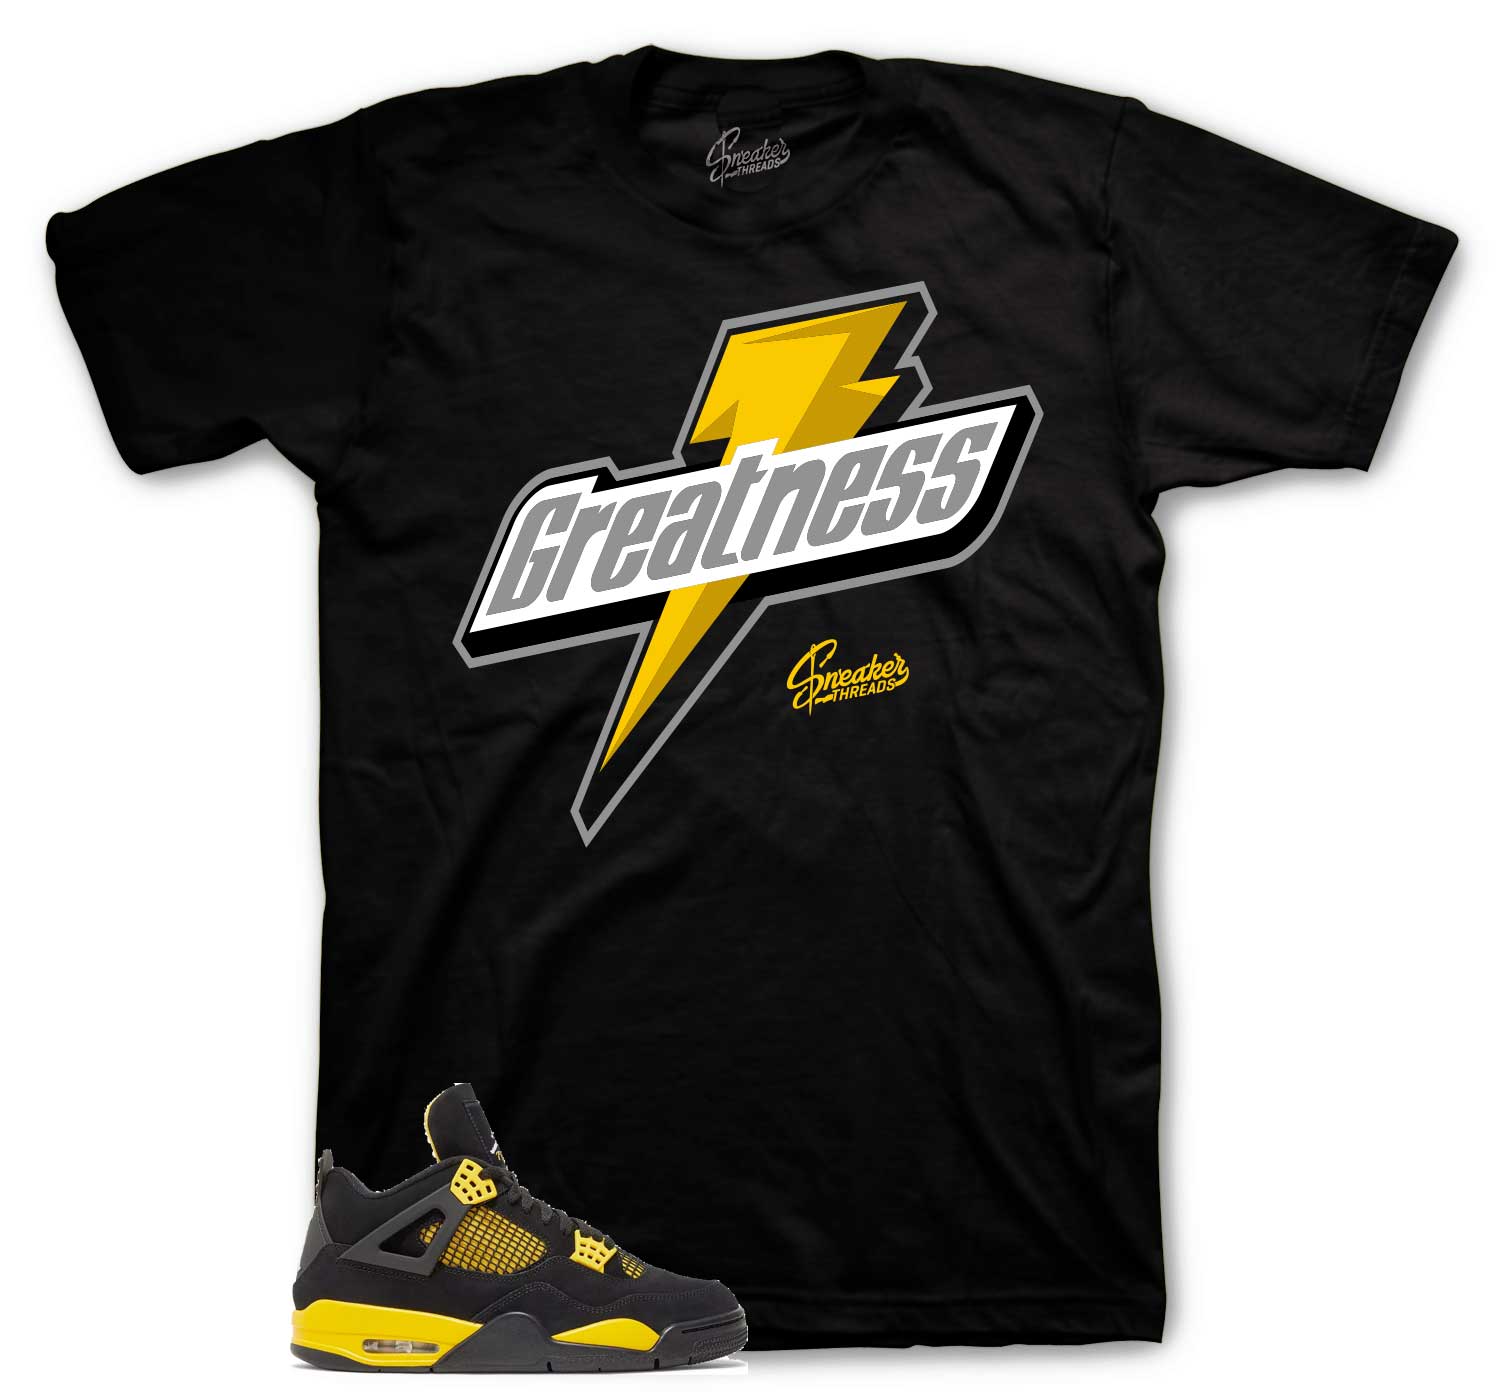 Retro 4 Yellow Thunder Shirt - Greatness - Black